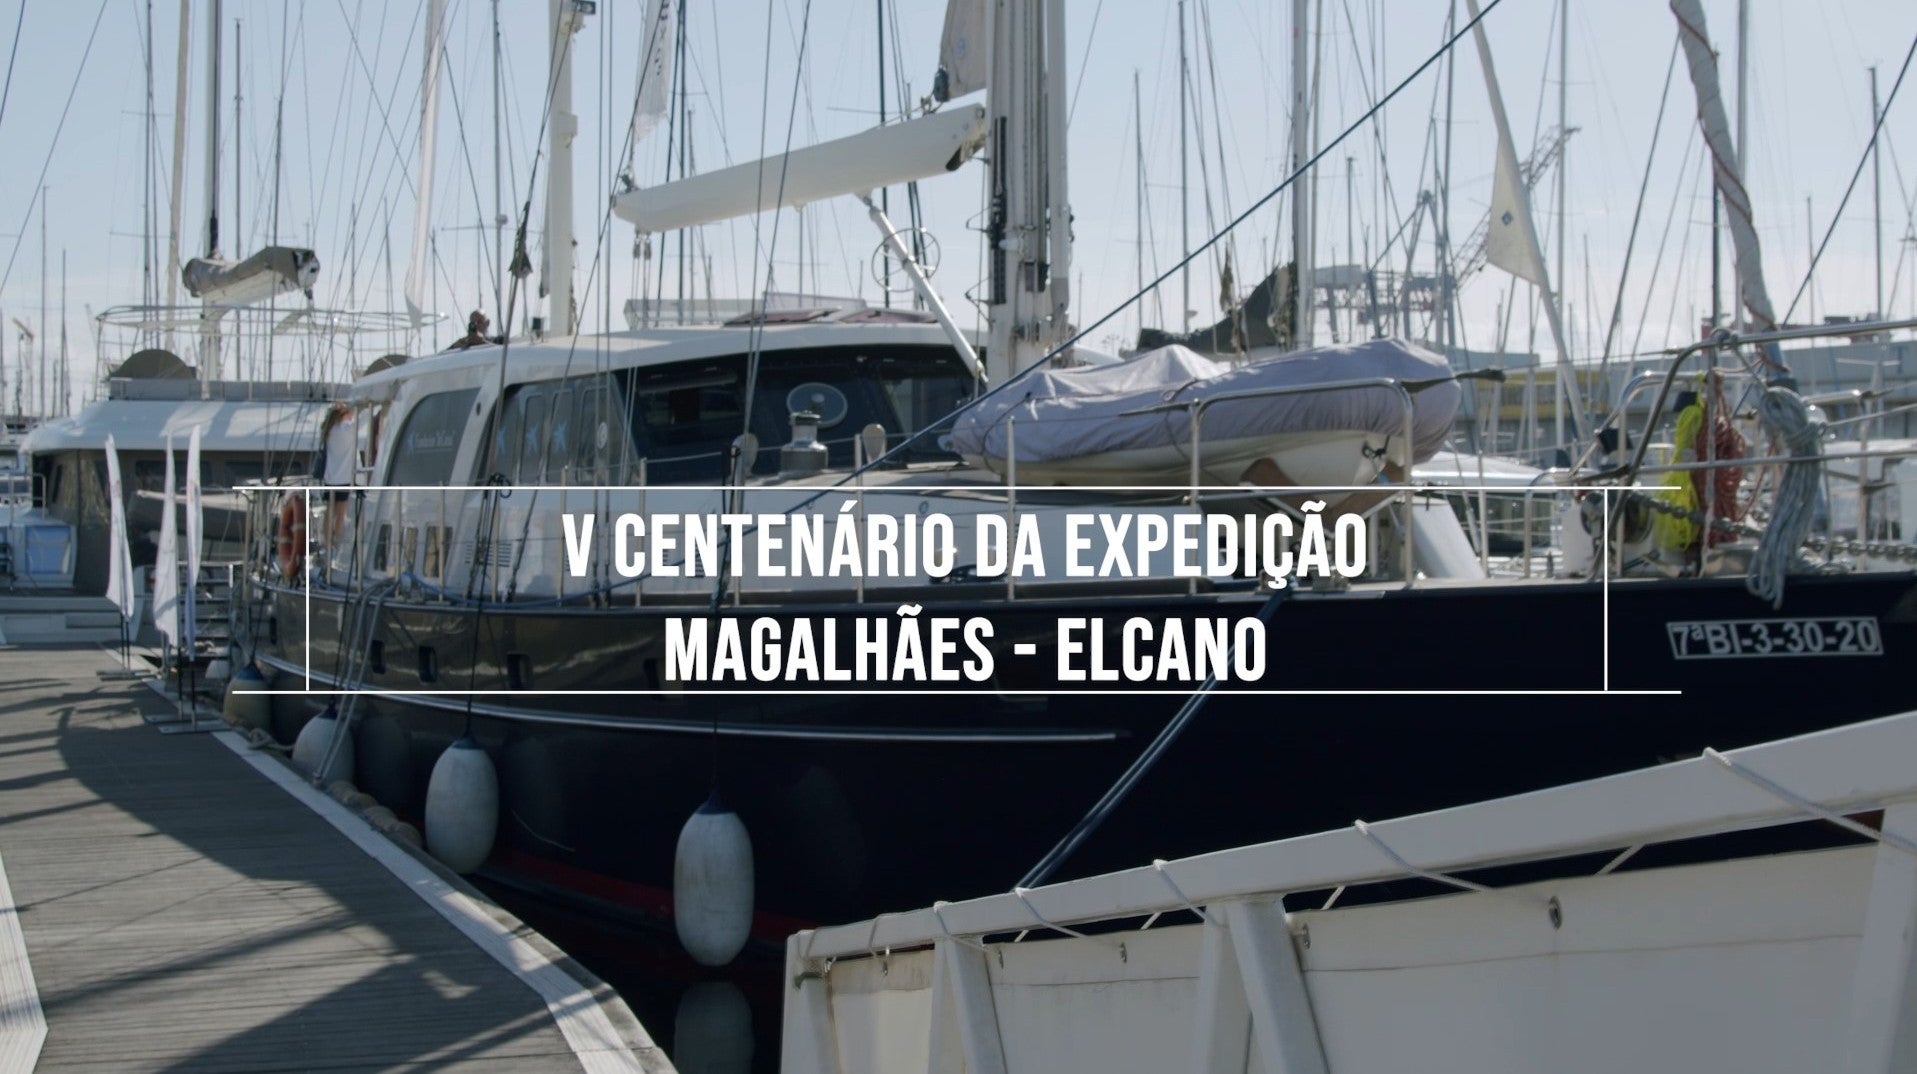 V Centenrio da Expedio Magalhes - Elcano